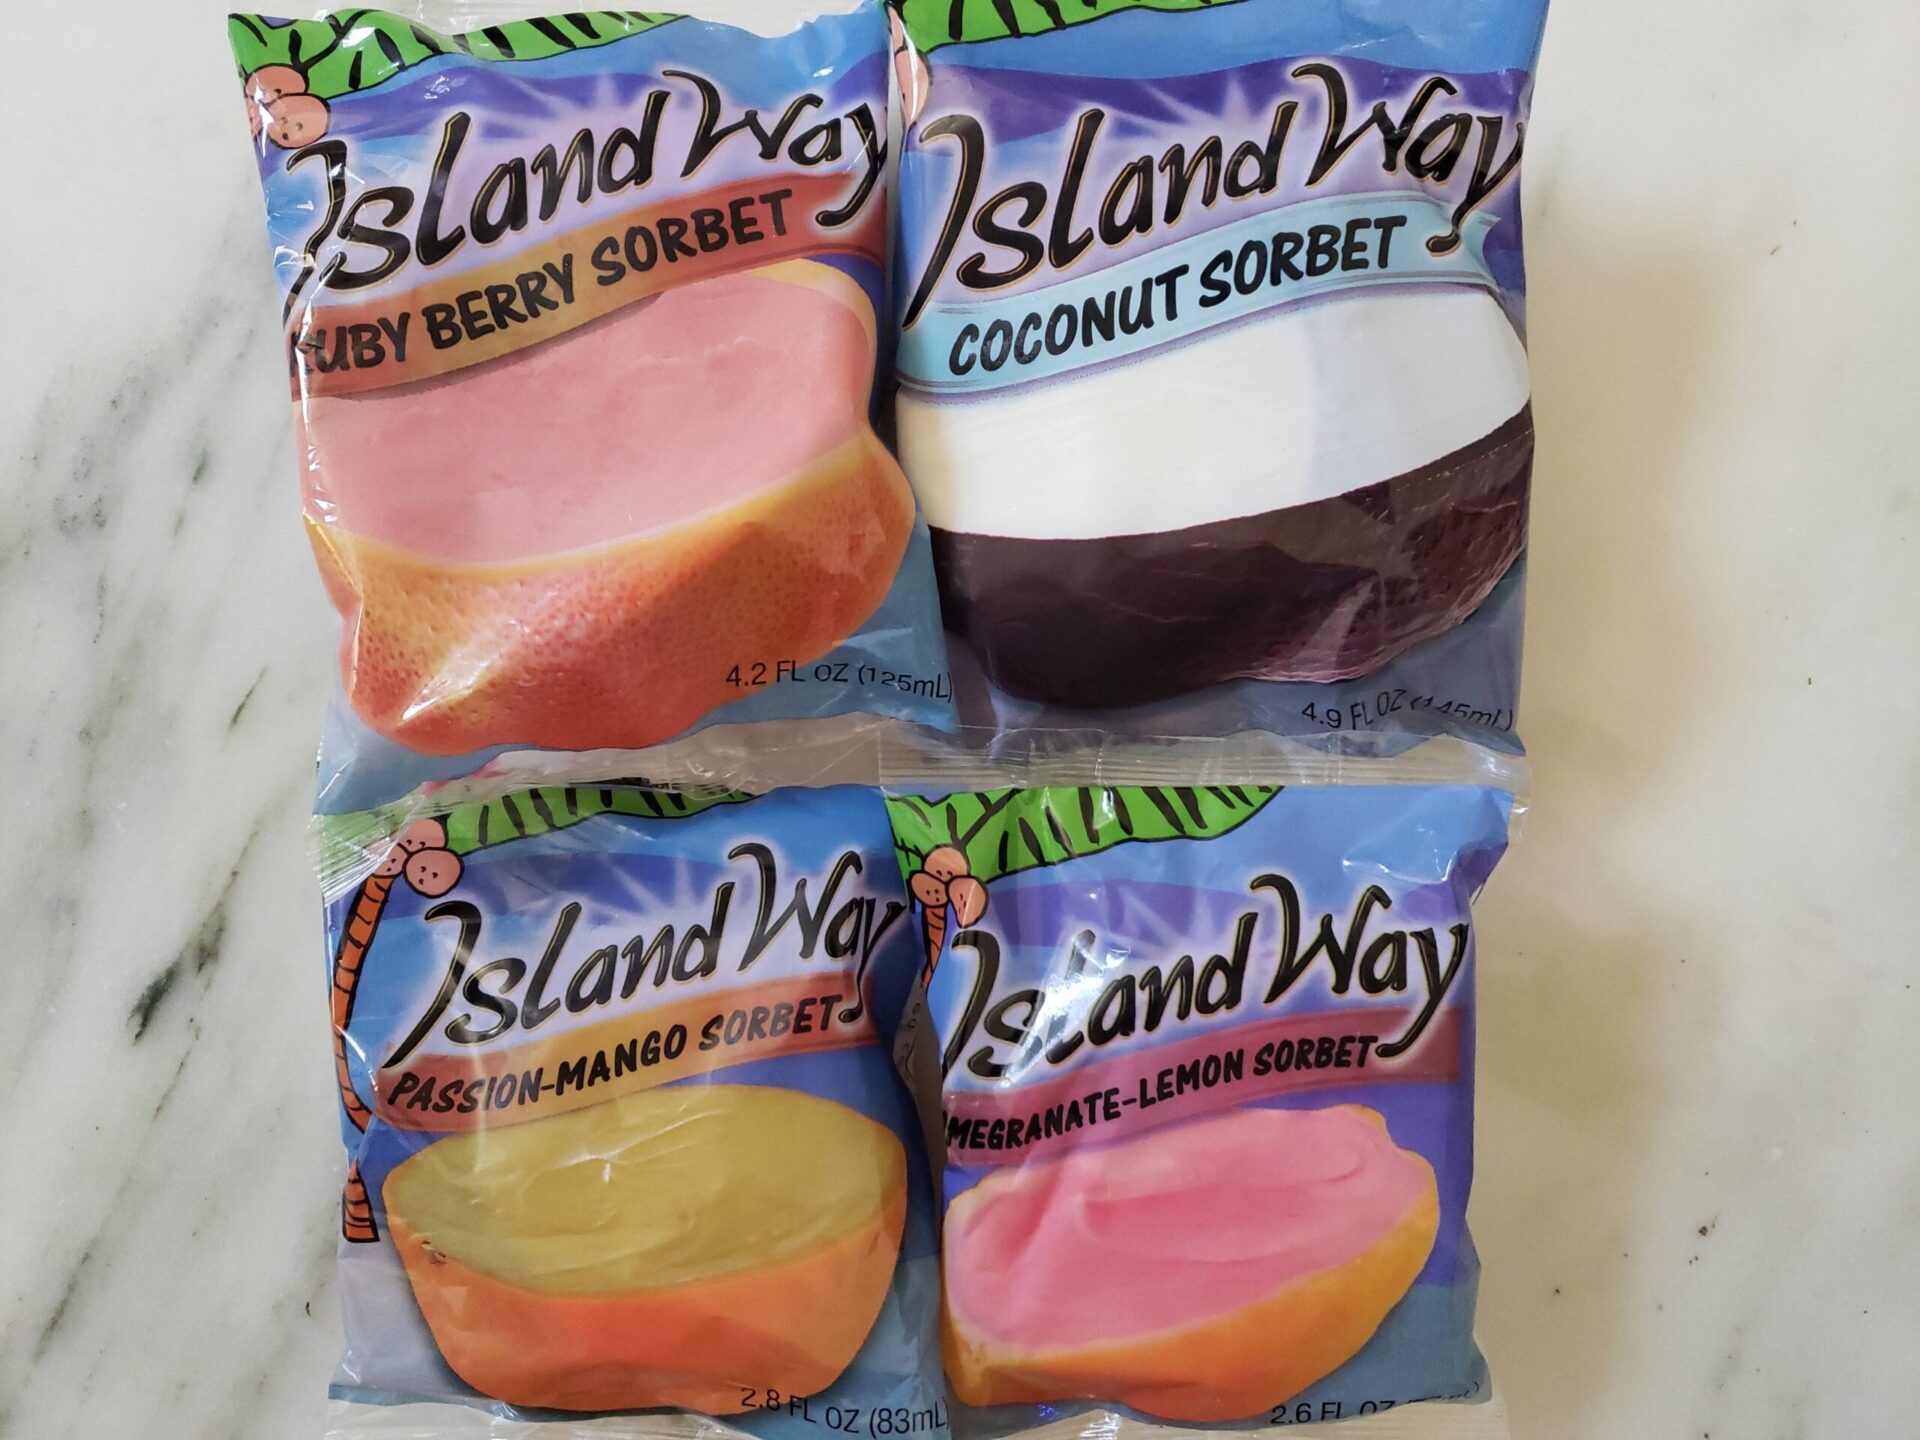 Flavors-of-Island-Way-Sorbet